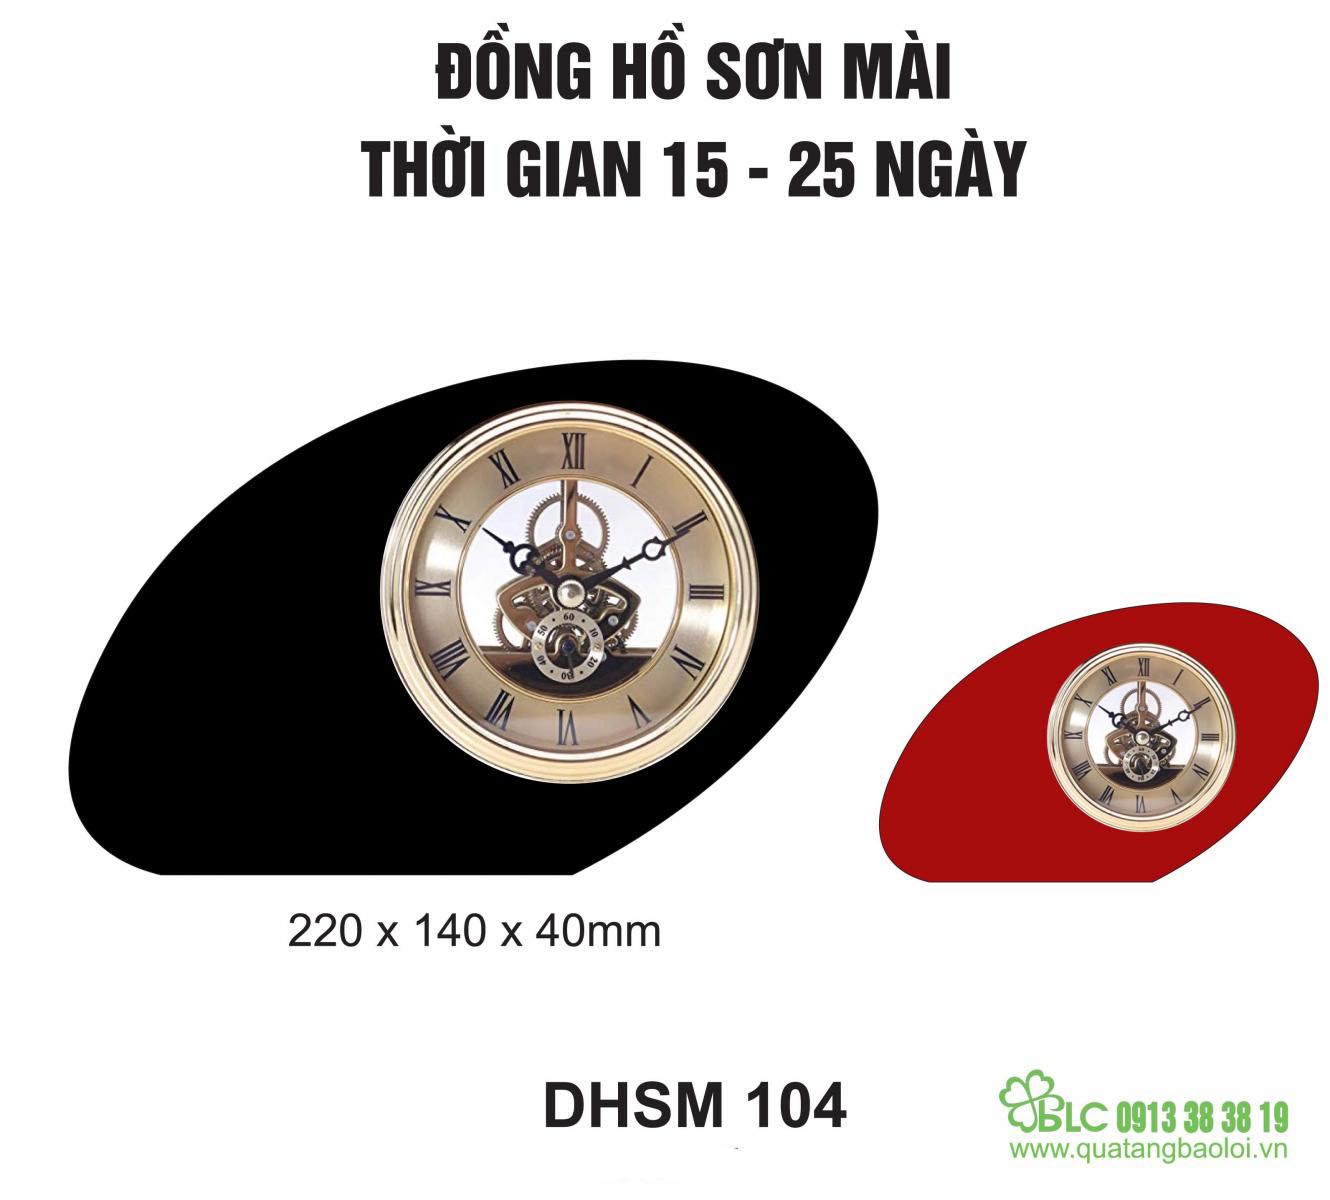 Đồng hồ để bàn sơn mài DHSM 104 tại Hải Phòng